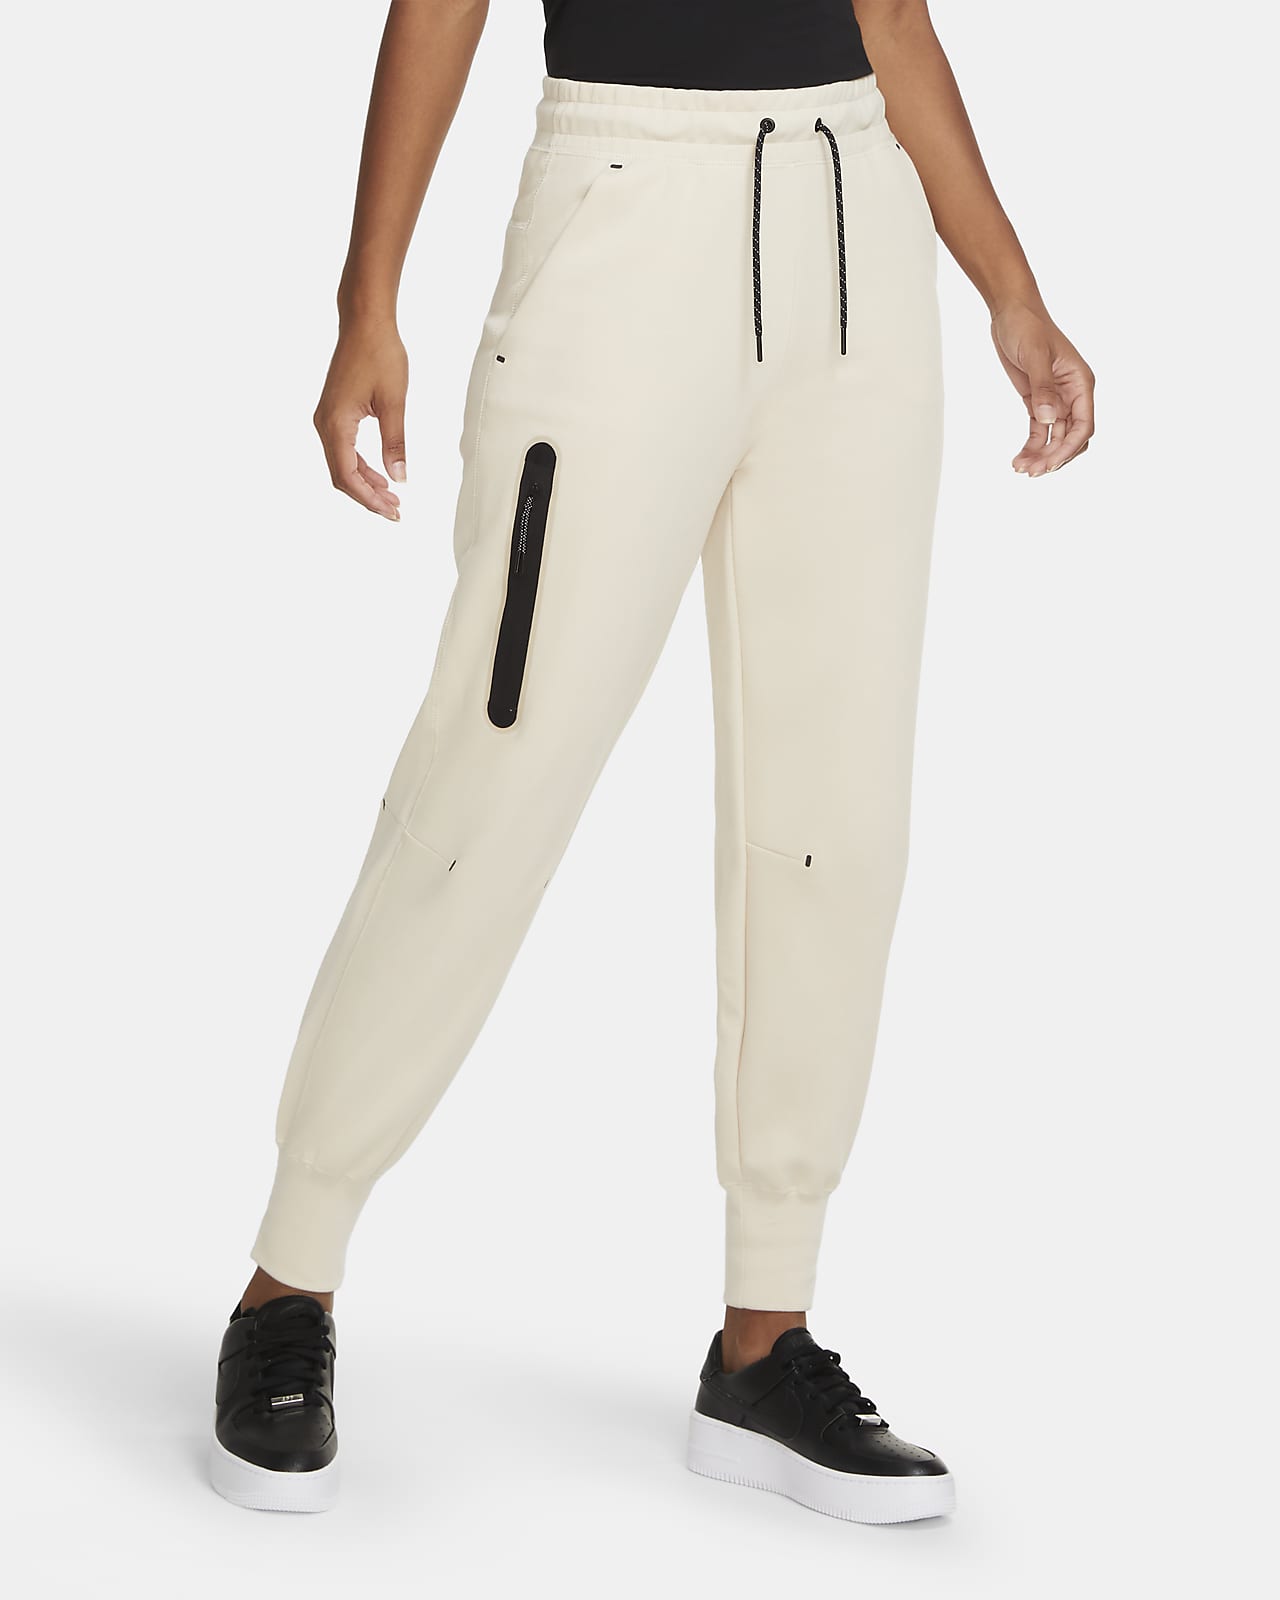 Pantalon Nike Sportswear Tech Fleece pour Femme